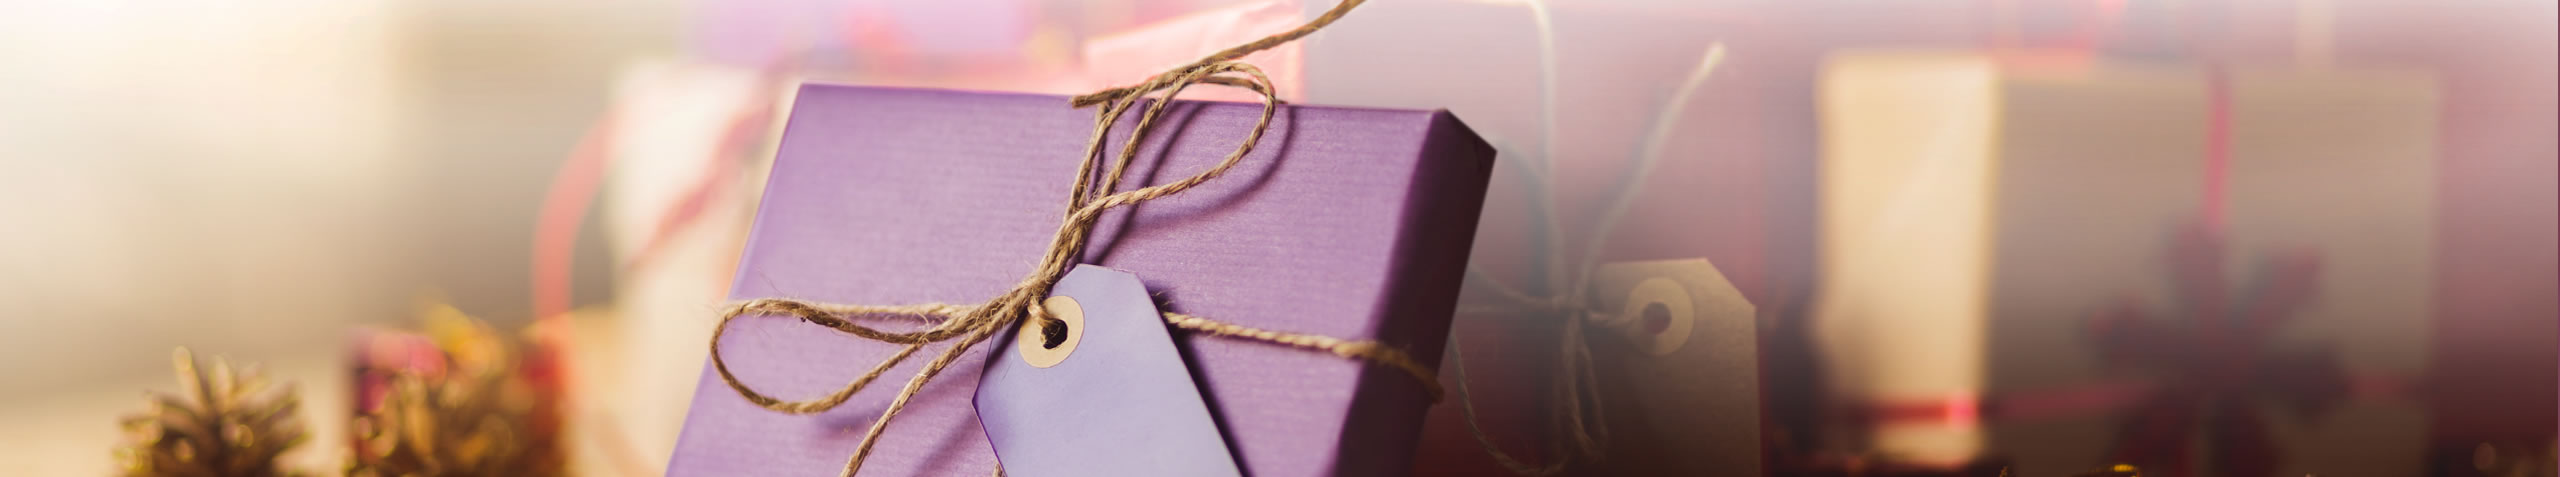 Individuelle Geschenkverpackungen und Faltschachteln, Geschenkideen, Faltschachteln uvm.